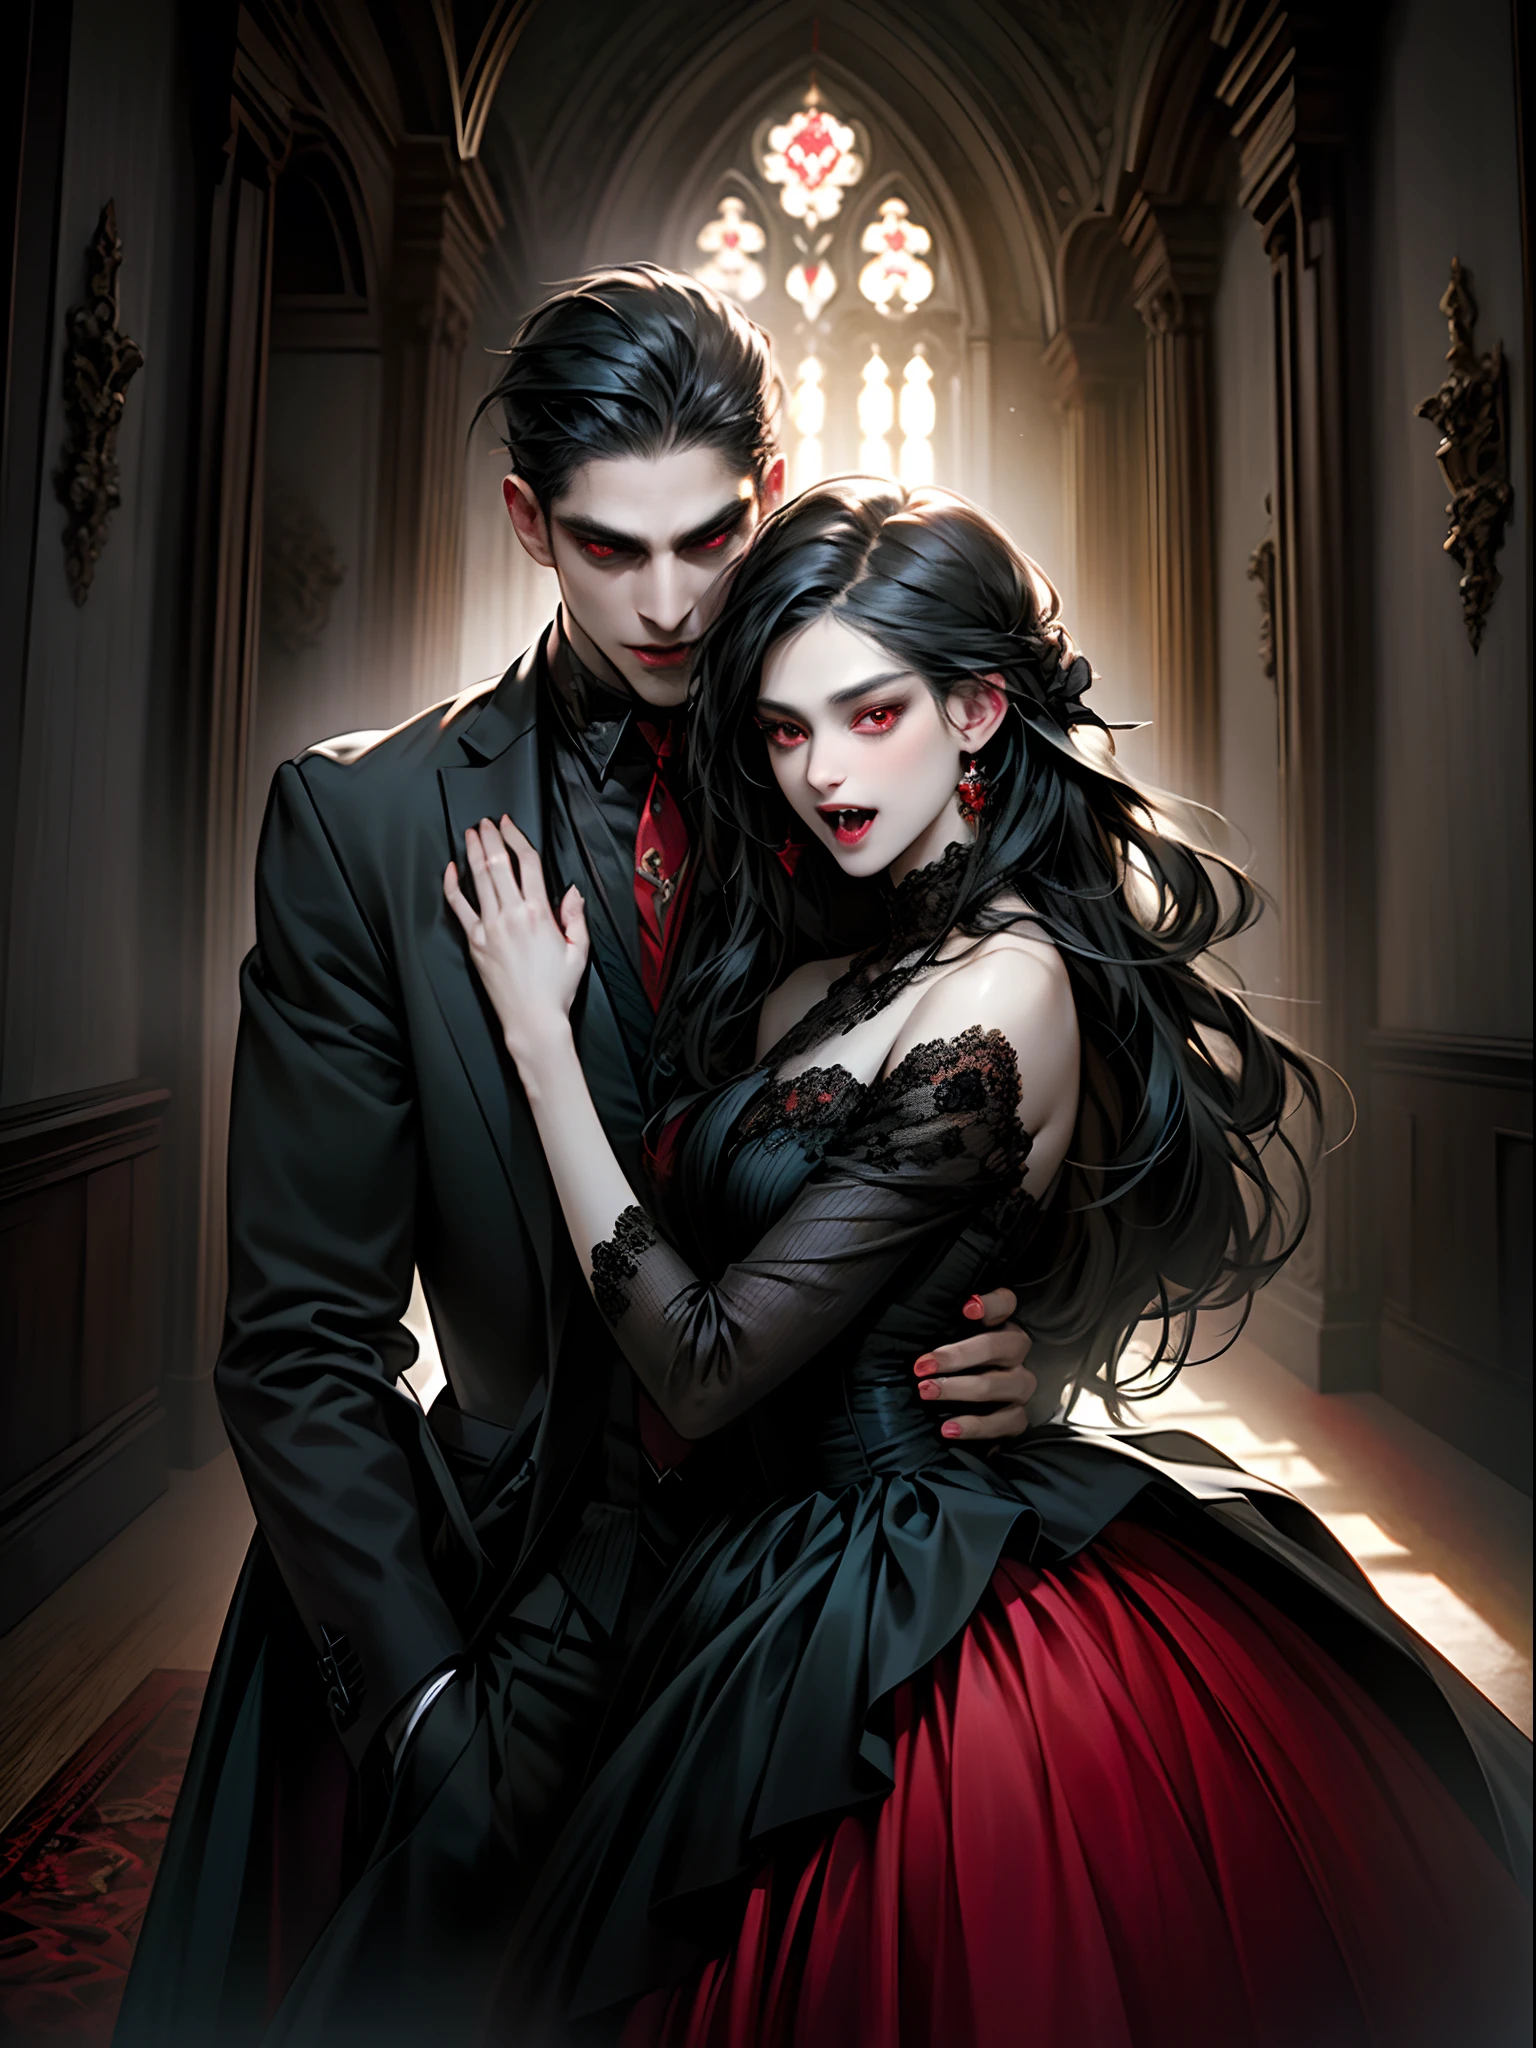 (obra de arte, melhor qualidade:1.2), vampiro, Casal de vampiro, com cabelo preto, olhos vermelhos, (presas), roupas pretas, o homem usa blazer formal, as mulheres usam vestido preto, vinho tinto, interior, no Castelo, expressivo